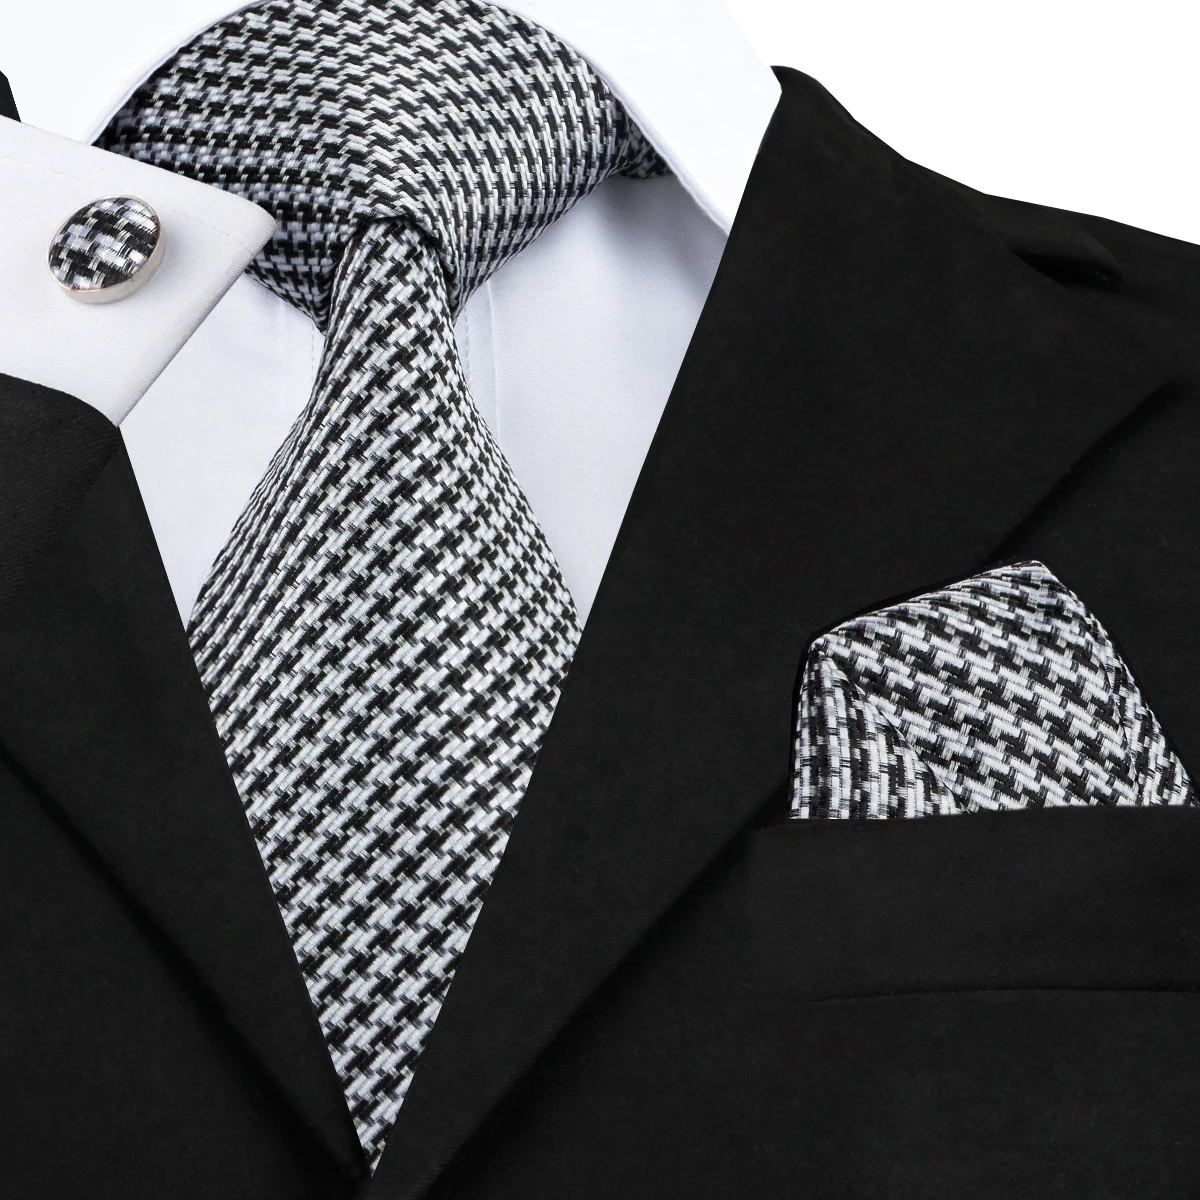 

2016 Модный черный, белый галстук в клетку, шелковые запонки, галстук, галстук для мужчин, строгий деловой, Свадебный галстук